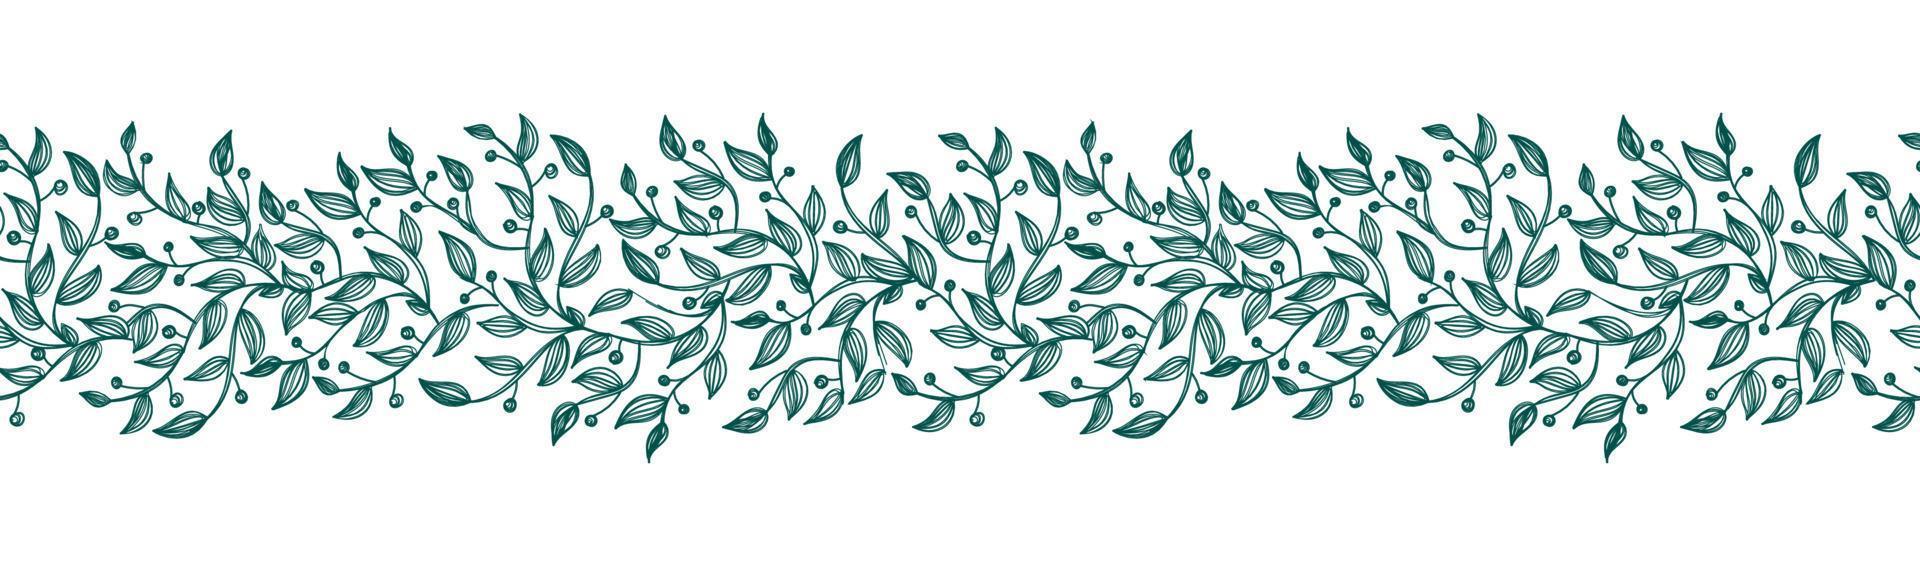 Dibujado a mano minimalista floral de patrones sin fisuras. patrón floral con flores de una línea vector